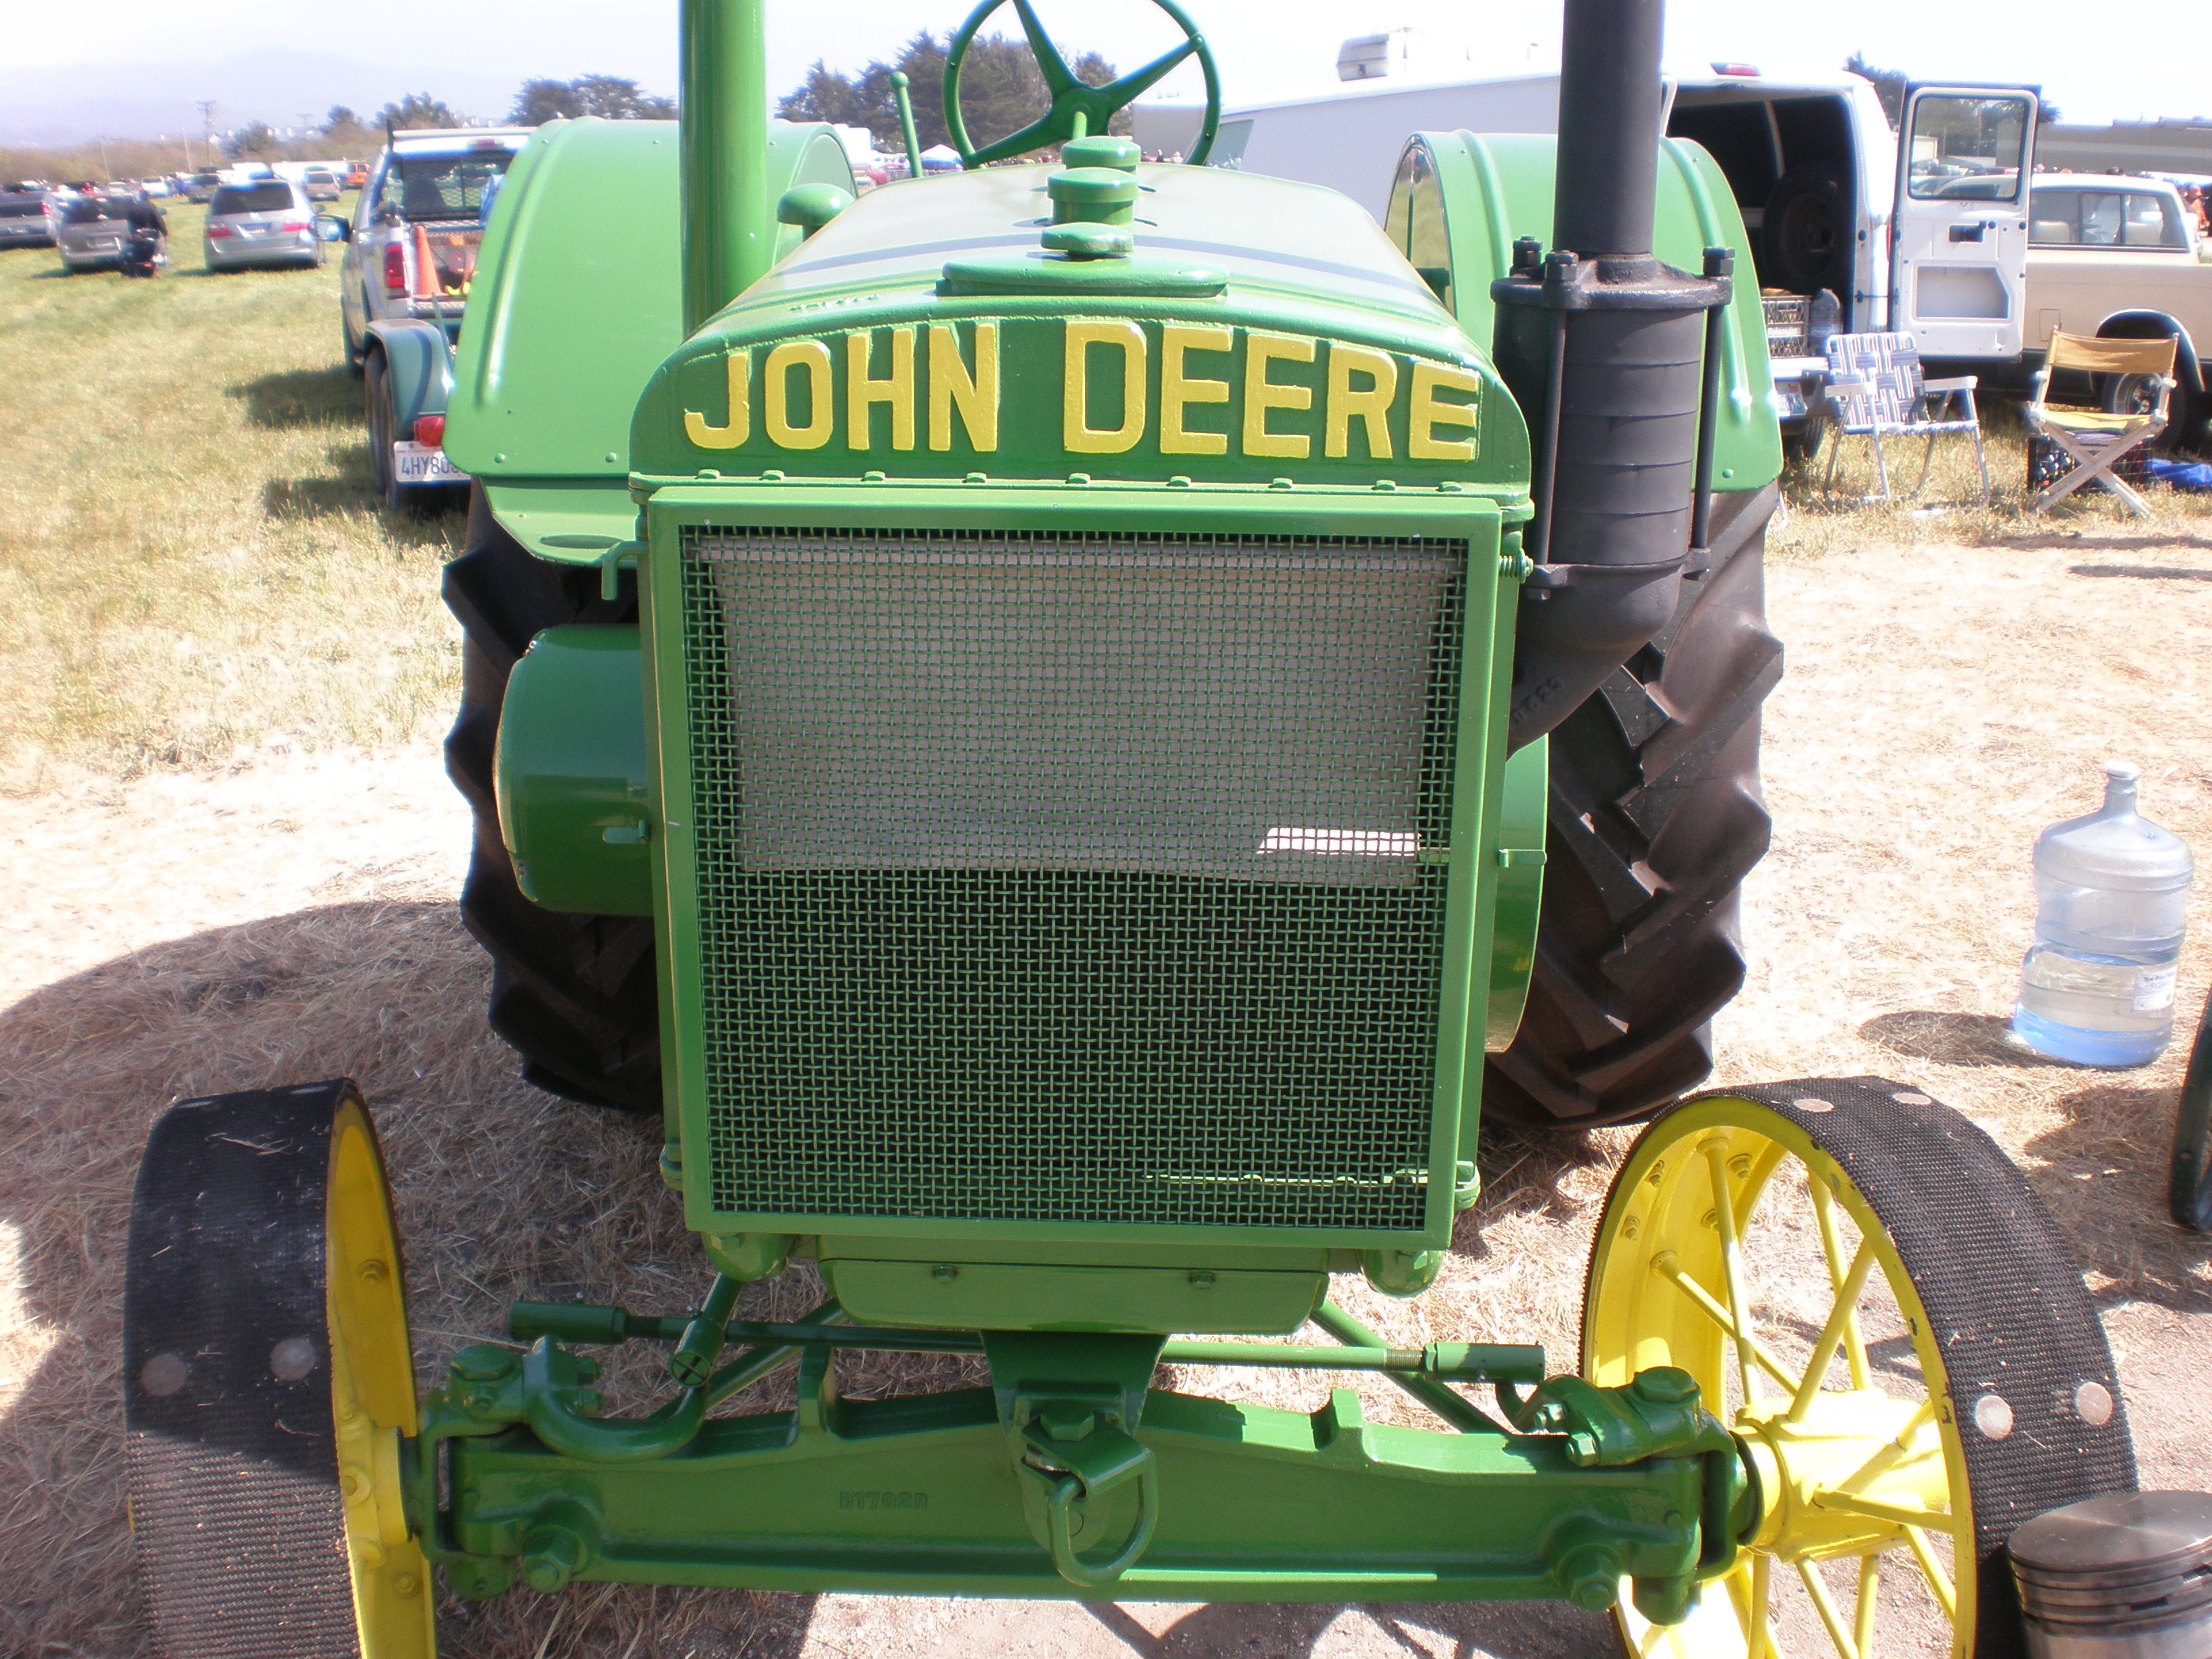 John Deere Model D